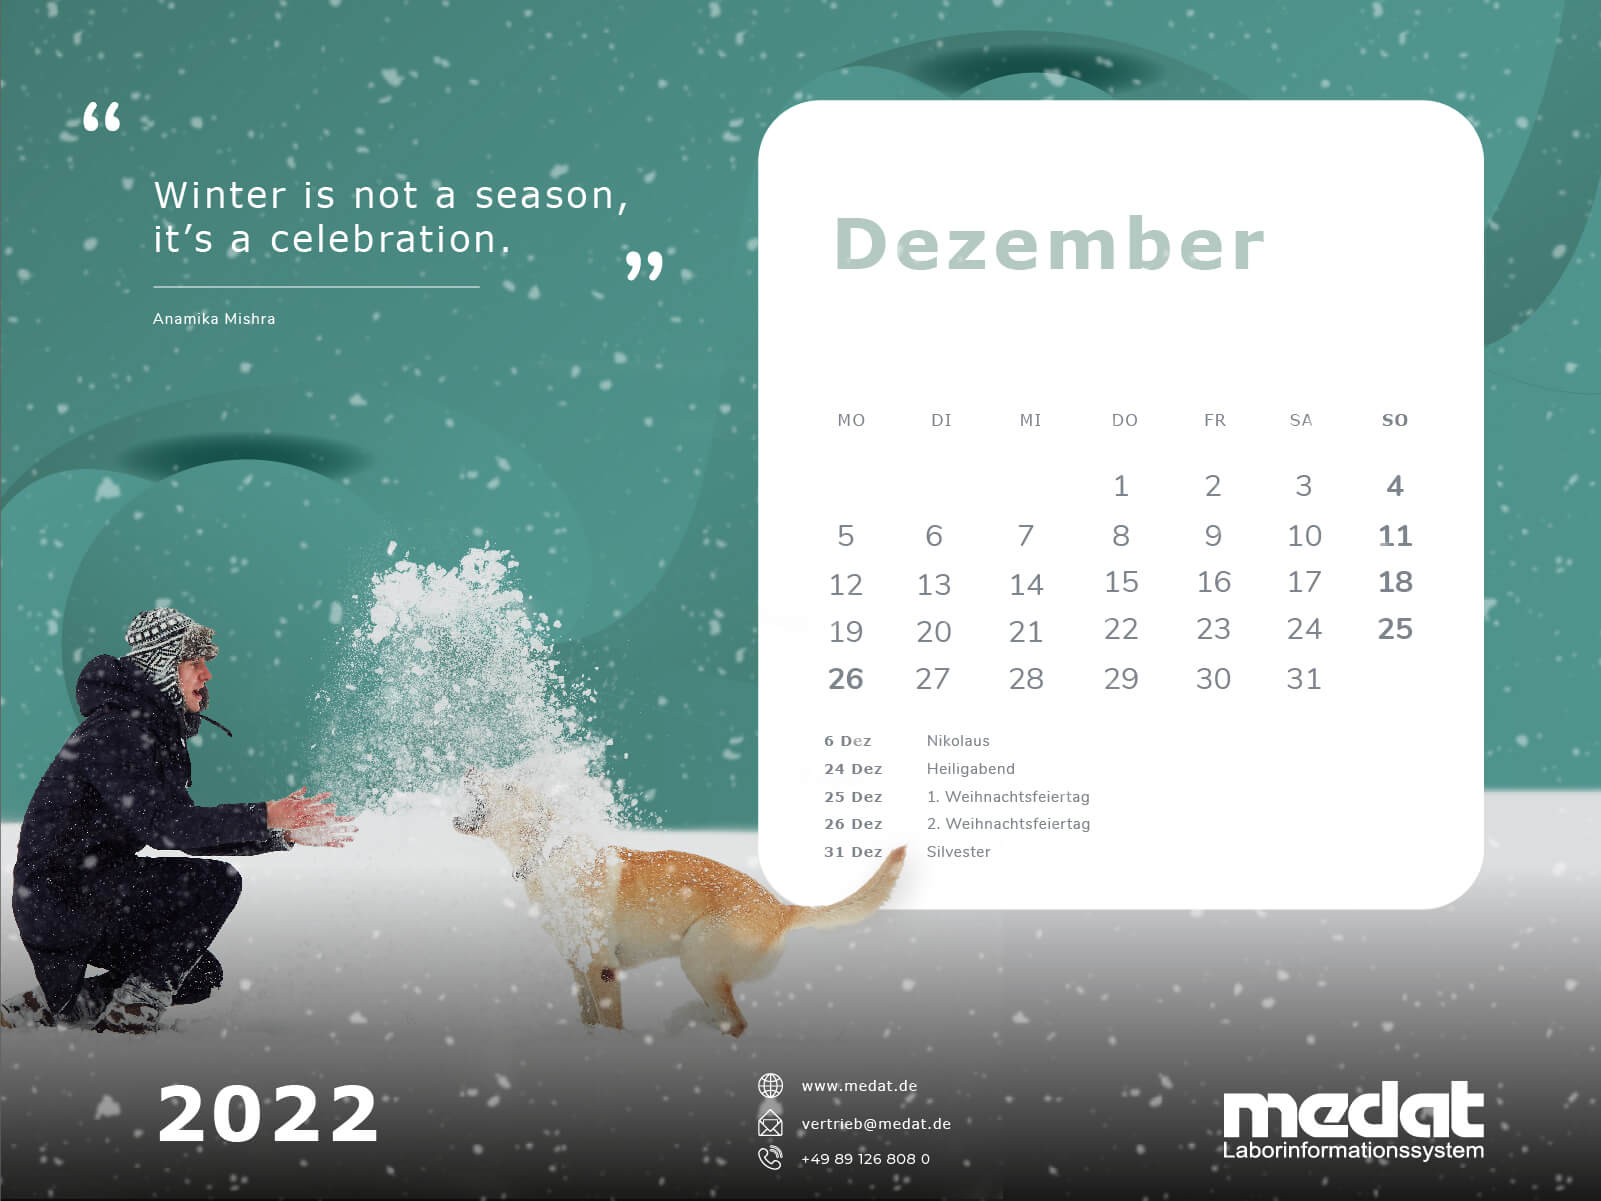 Kalenderblatt für Dezember 2022. Im Hintergrund befindet sich eine Grafik in einem kaltes blau. Im Vordergrund ist ein Feld mit den einzelnen Tagen des Monat, ein Bild von einem Mann, der mit seinem Hund im Schnee spielt und dem Spruch "Winter is not a season, it's a celebration" zu sehen.